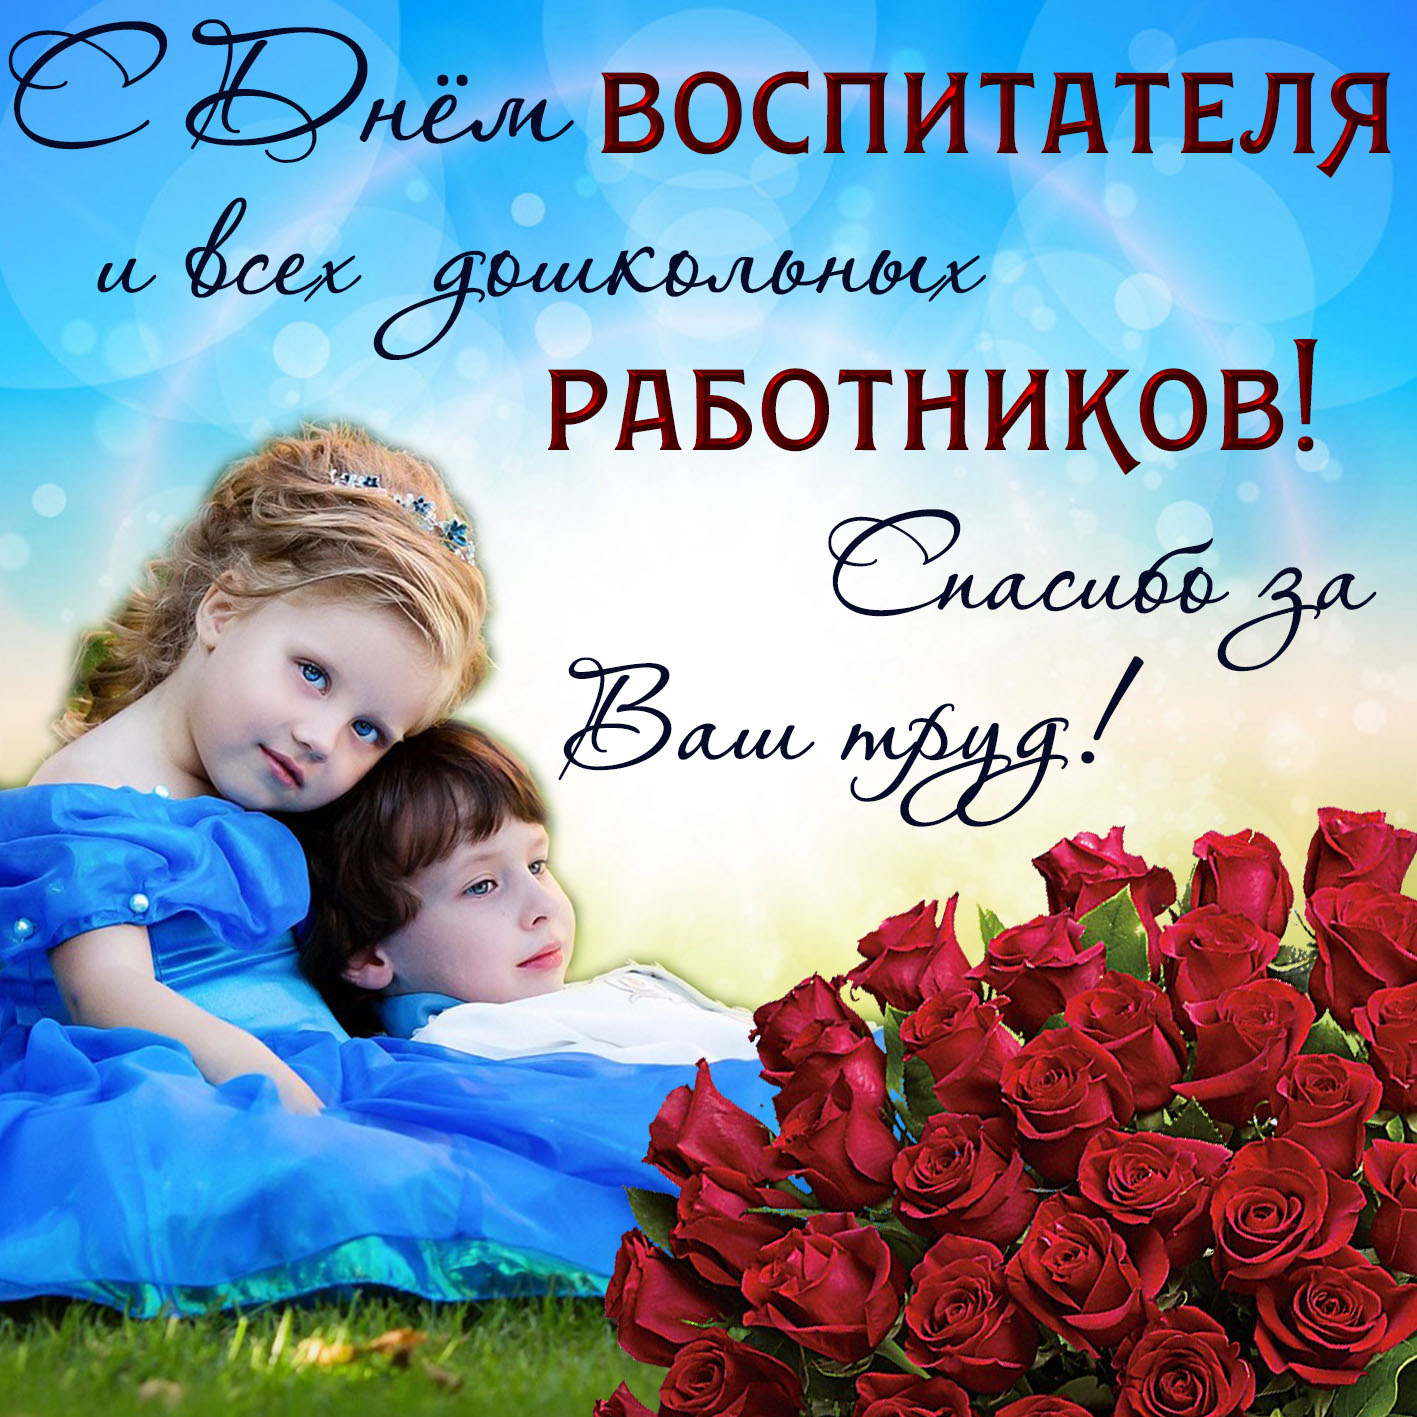 Картинка с букетом роз на День всех дошкольных работников